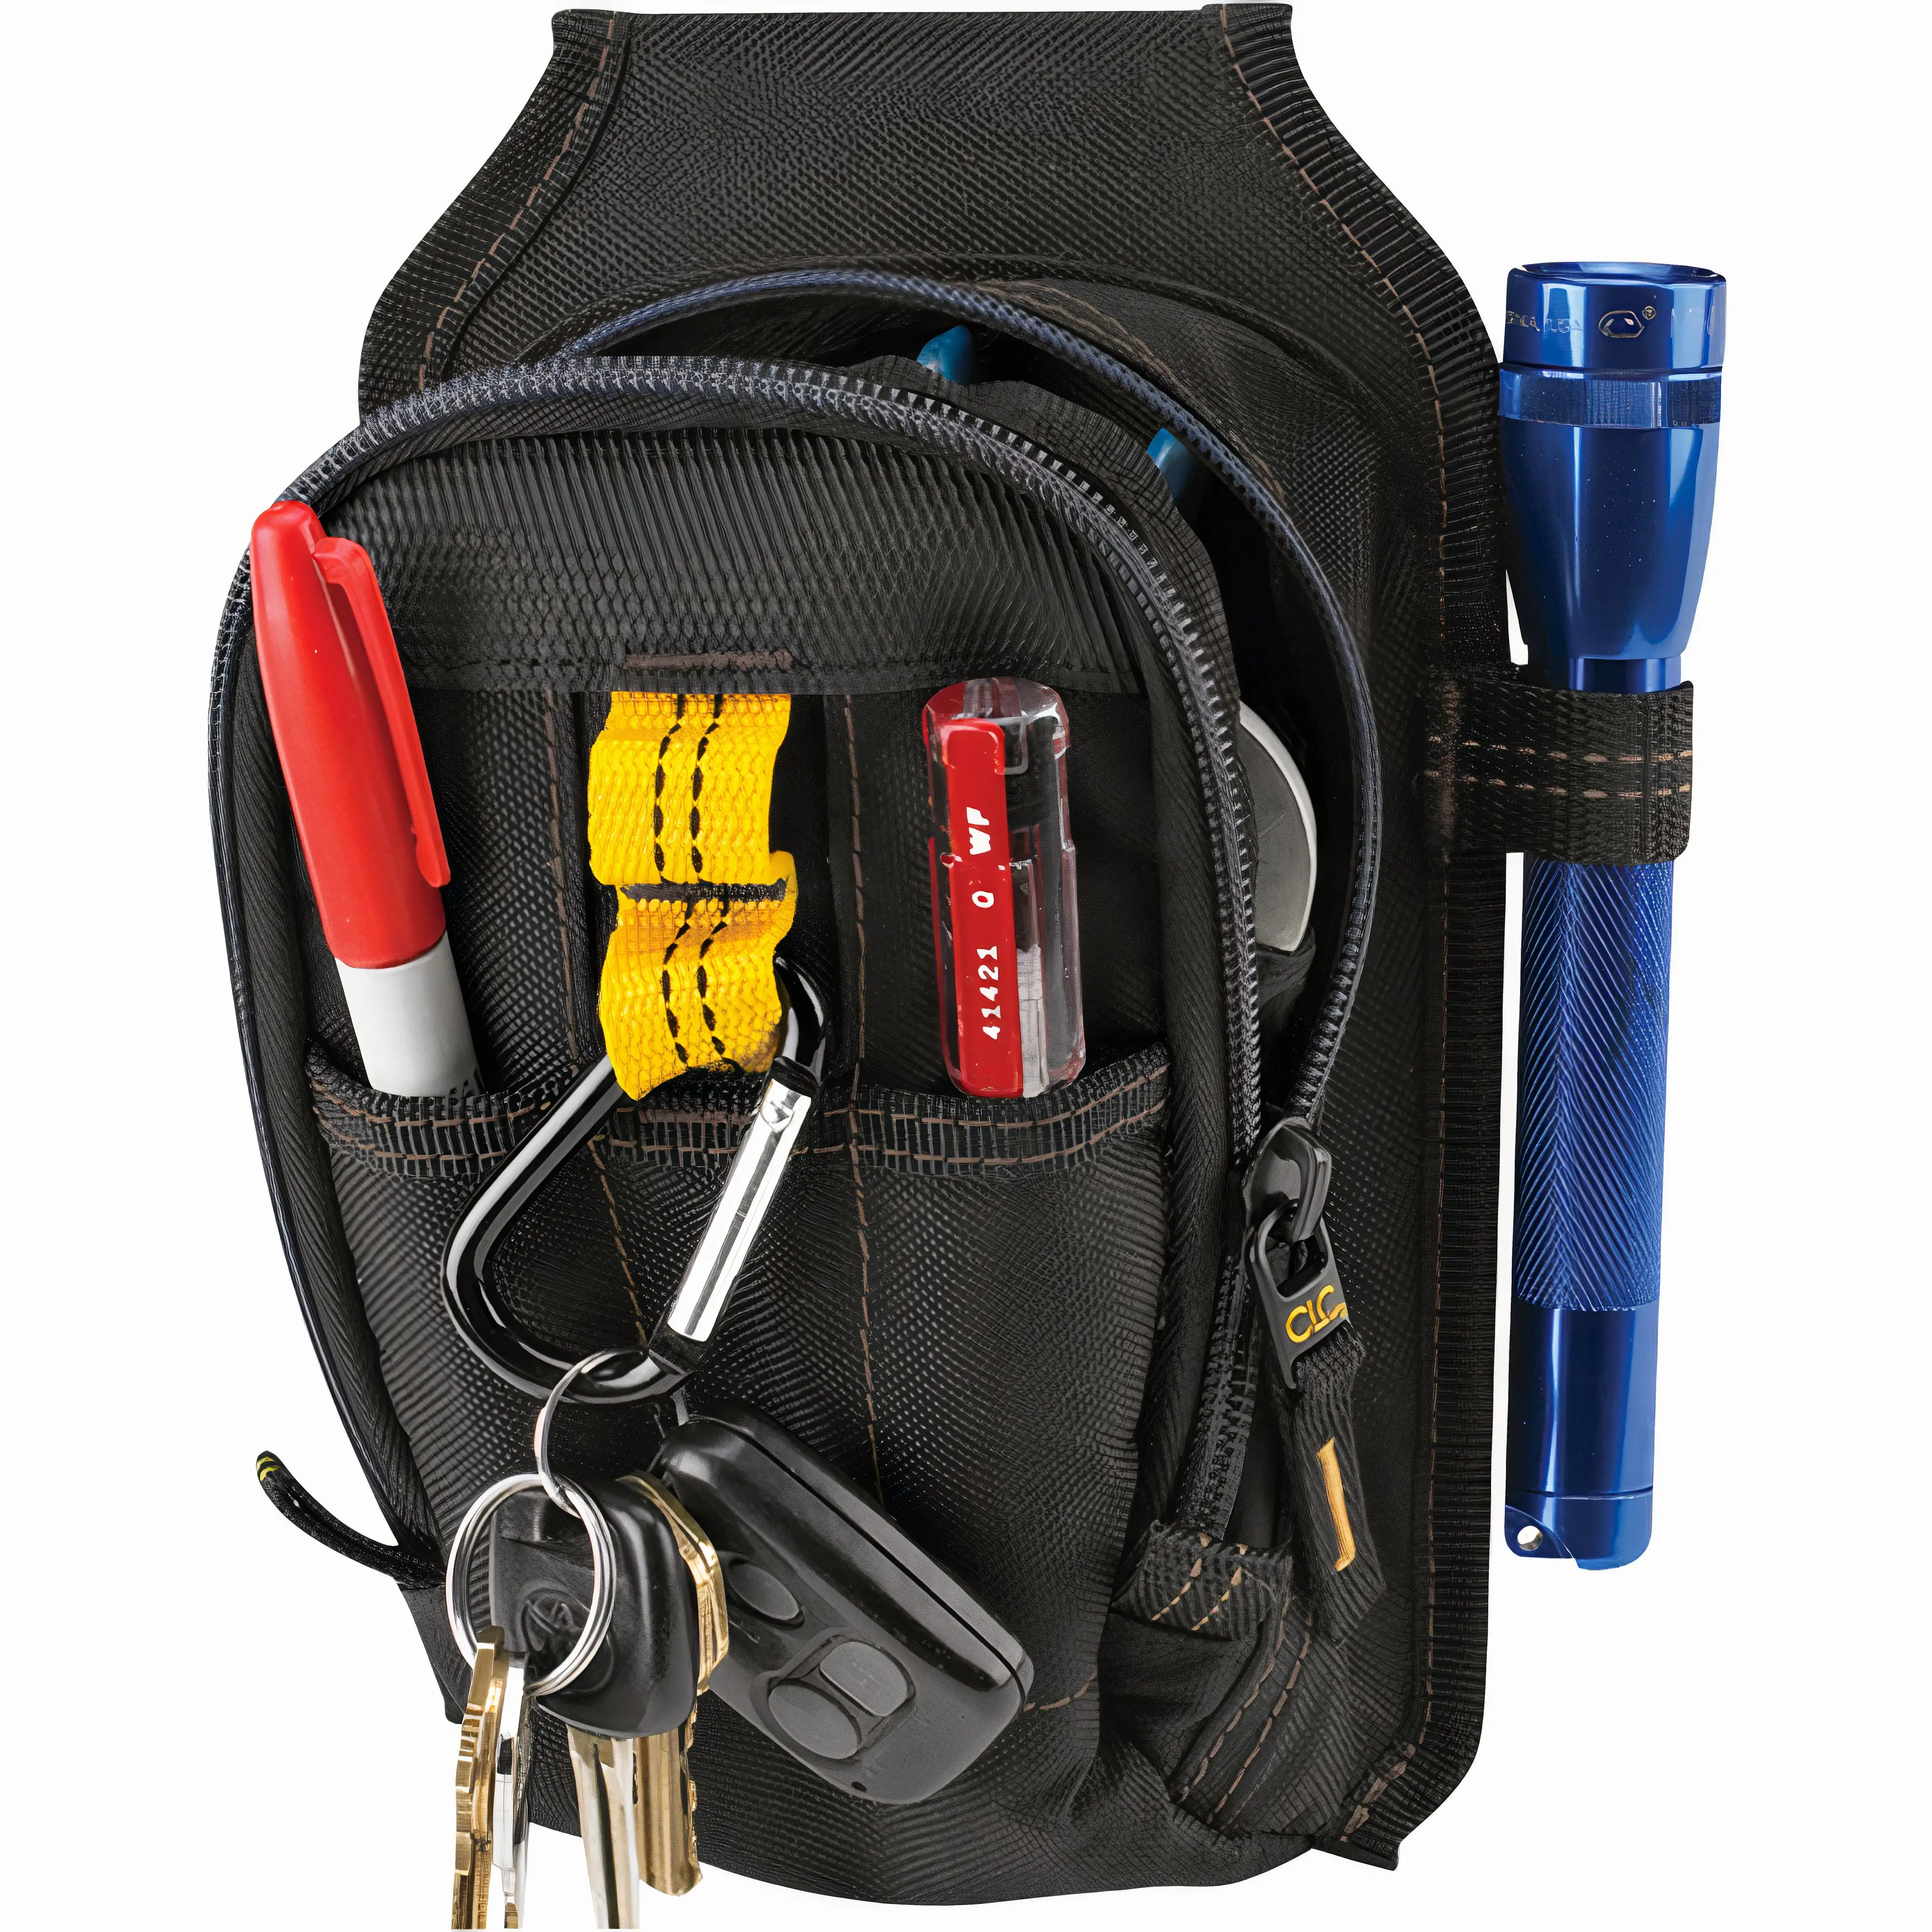 Herramientas Linterna Llaves Bolsa de herramientas de electricista Pequeño mantenimiento duradero y bolsa de electricista con bolsillos La mejor calidad